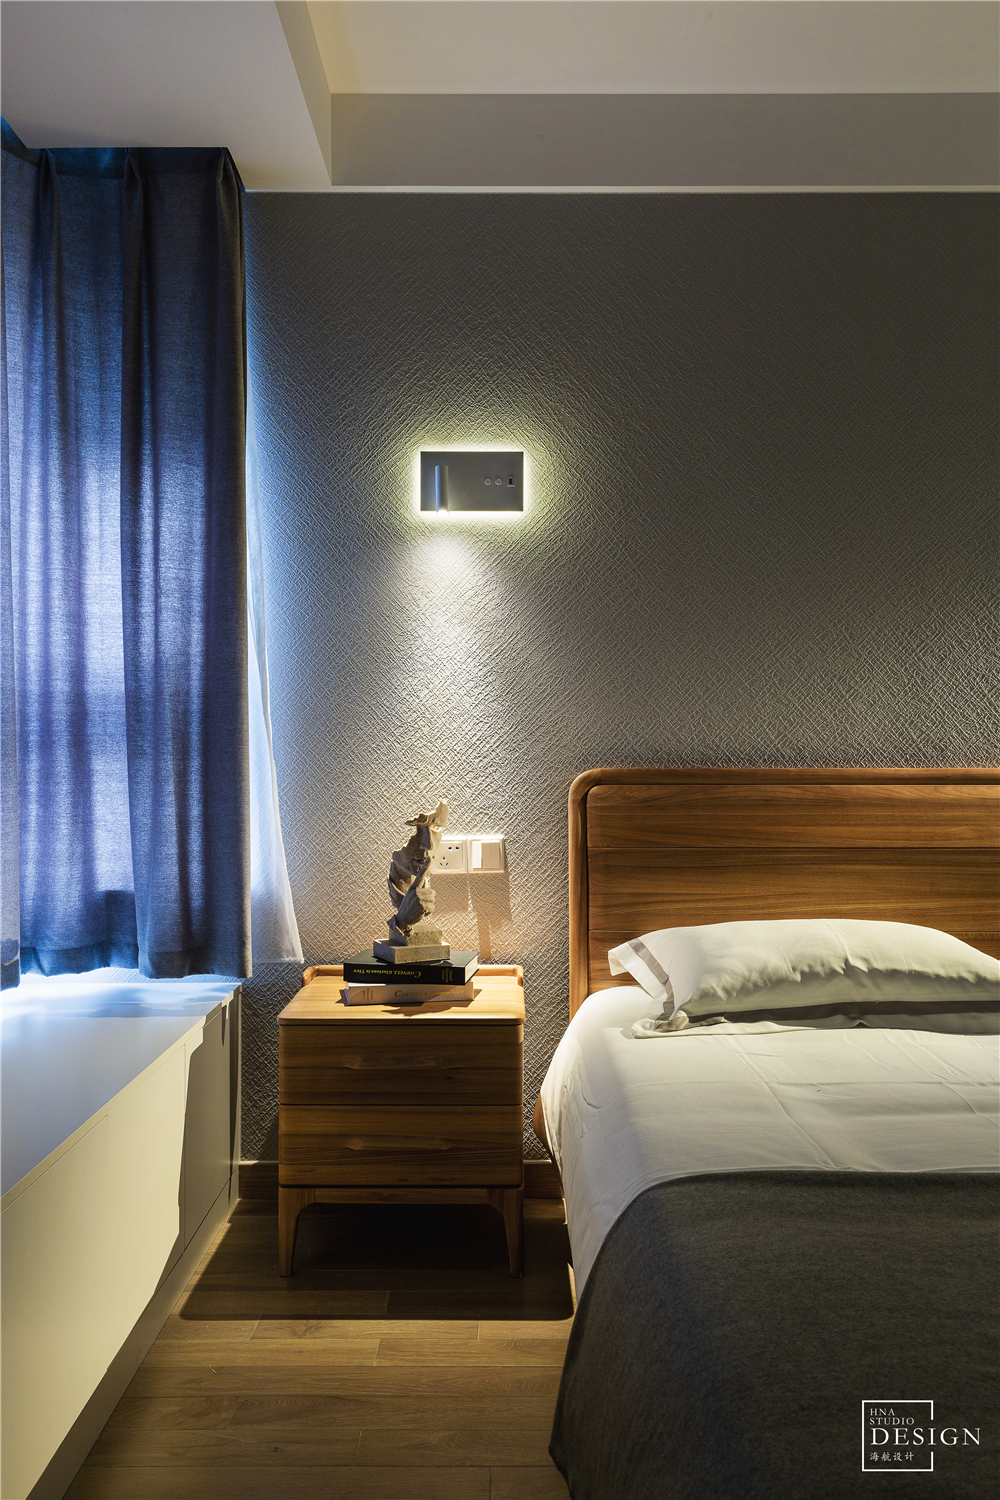 卧室床头柜装修效果图简单北欧风卧室壁灯设计图北欧风卧室设计图片赏析